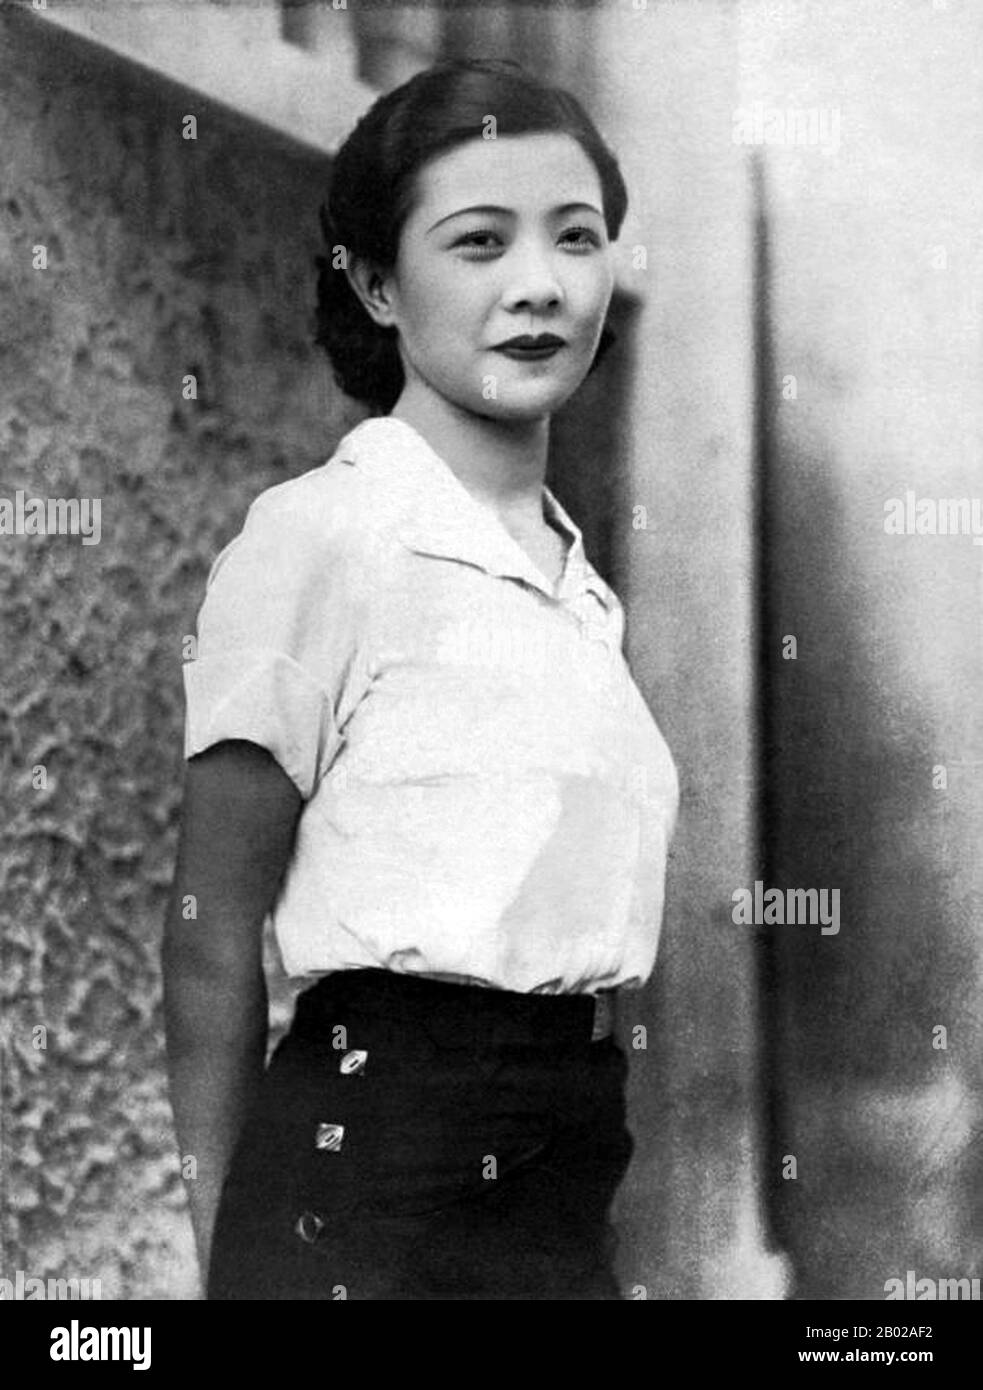 Ruan Lingyu (Ruan Fenggen, 26 aprile 1910 – 8 marzo 1935) è stata una . Una delle più importanti star del cinema cinese della 1930s, il suo tragico suicidio all'età di 24 anni la portò a diventare un'icona del cinema cinese. La sua processione funeraria era di tre miglia di lunghezza, con tre donne che si suicidavano durante l'evento. Foto Stock